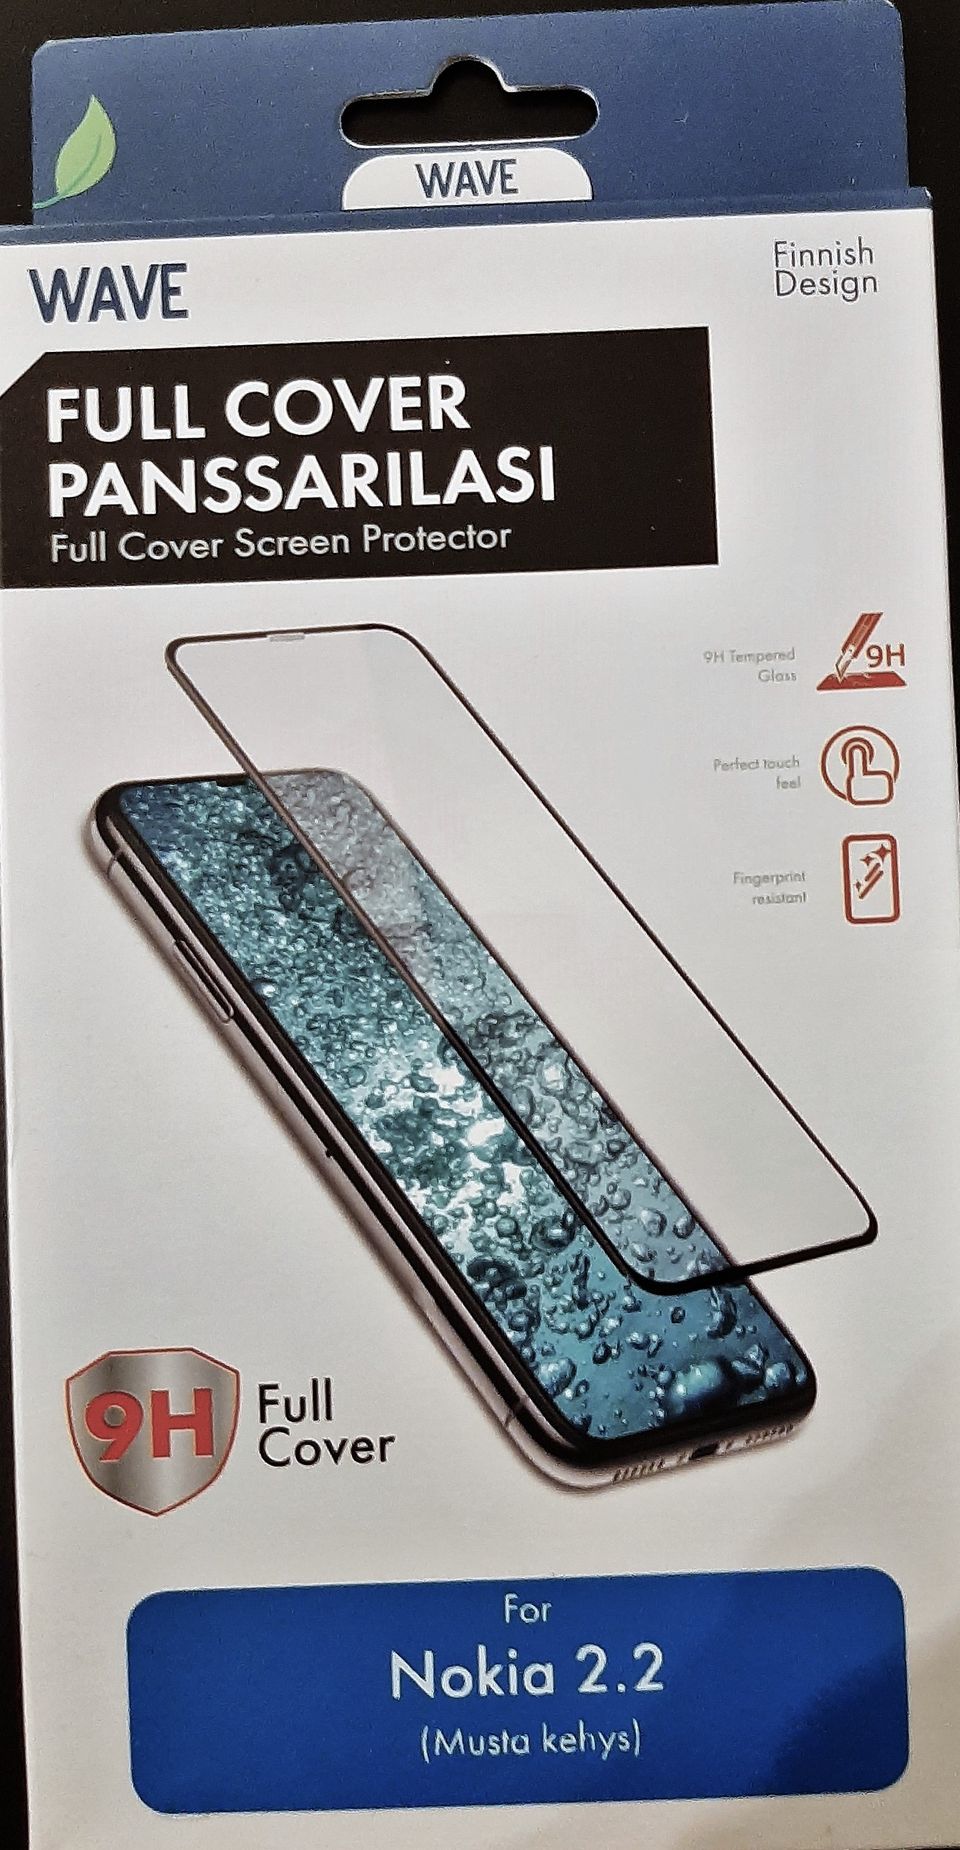 Uusi Wave Full Cover Panssarilasi Nokia 2.2